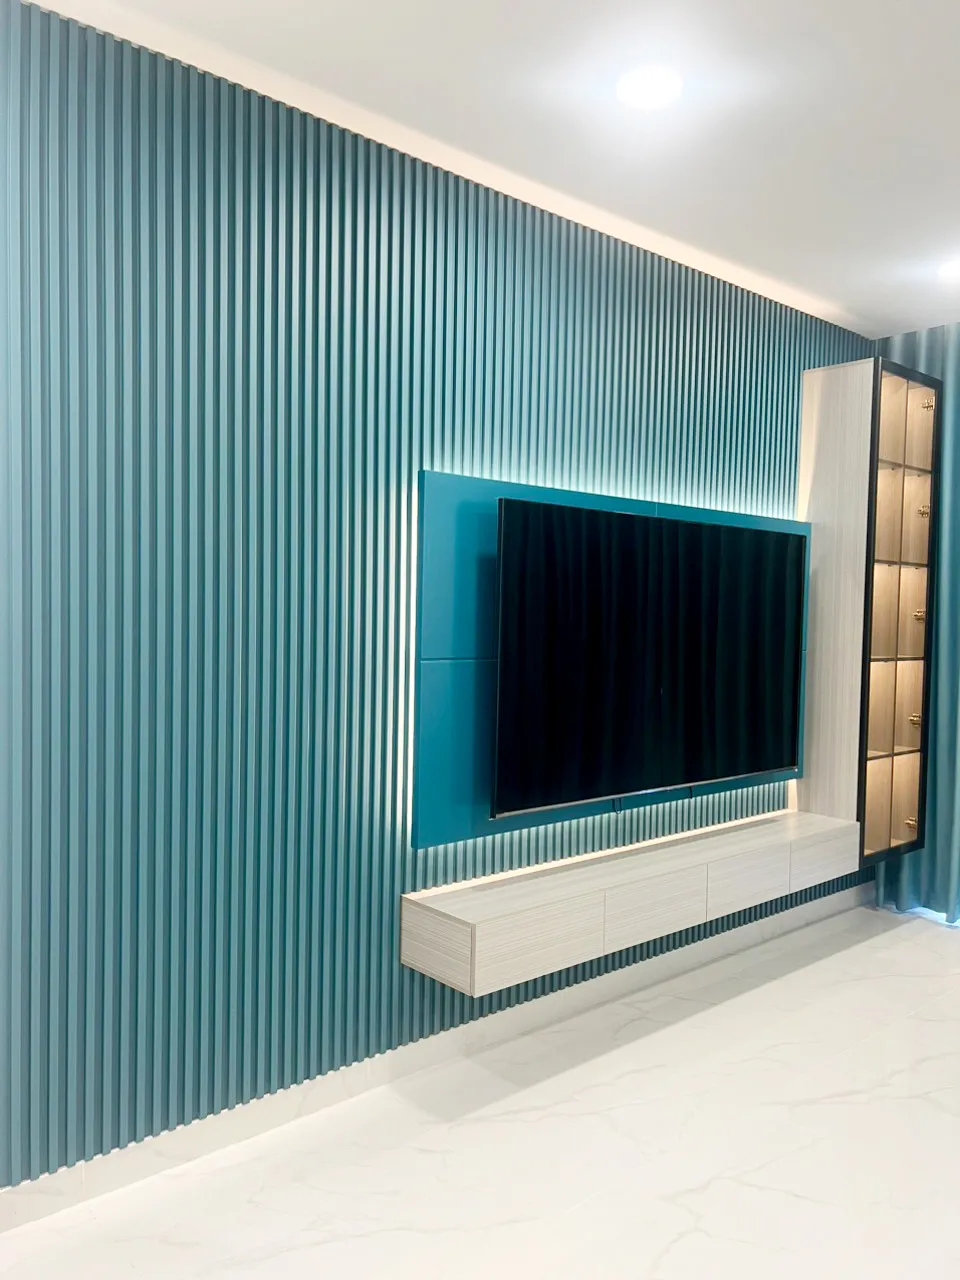 Hoàn thiện nội thất phòng khách Căn hộ chung cư Celadon Tân Phú 95m2 mang phong cách Color Block